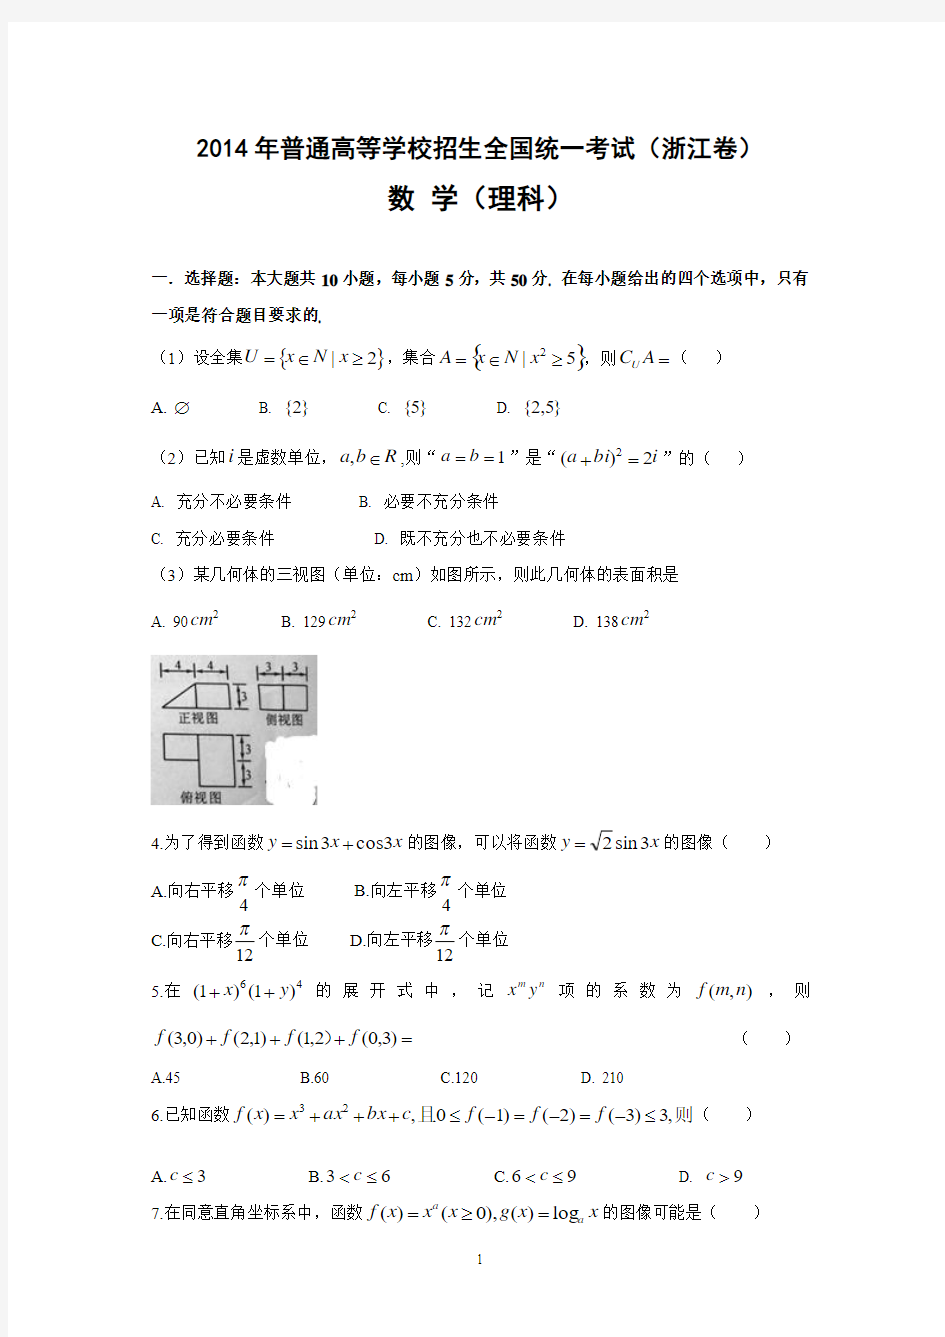 2014年浙江省高考理科数学真题试题及答案解析(完整版)